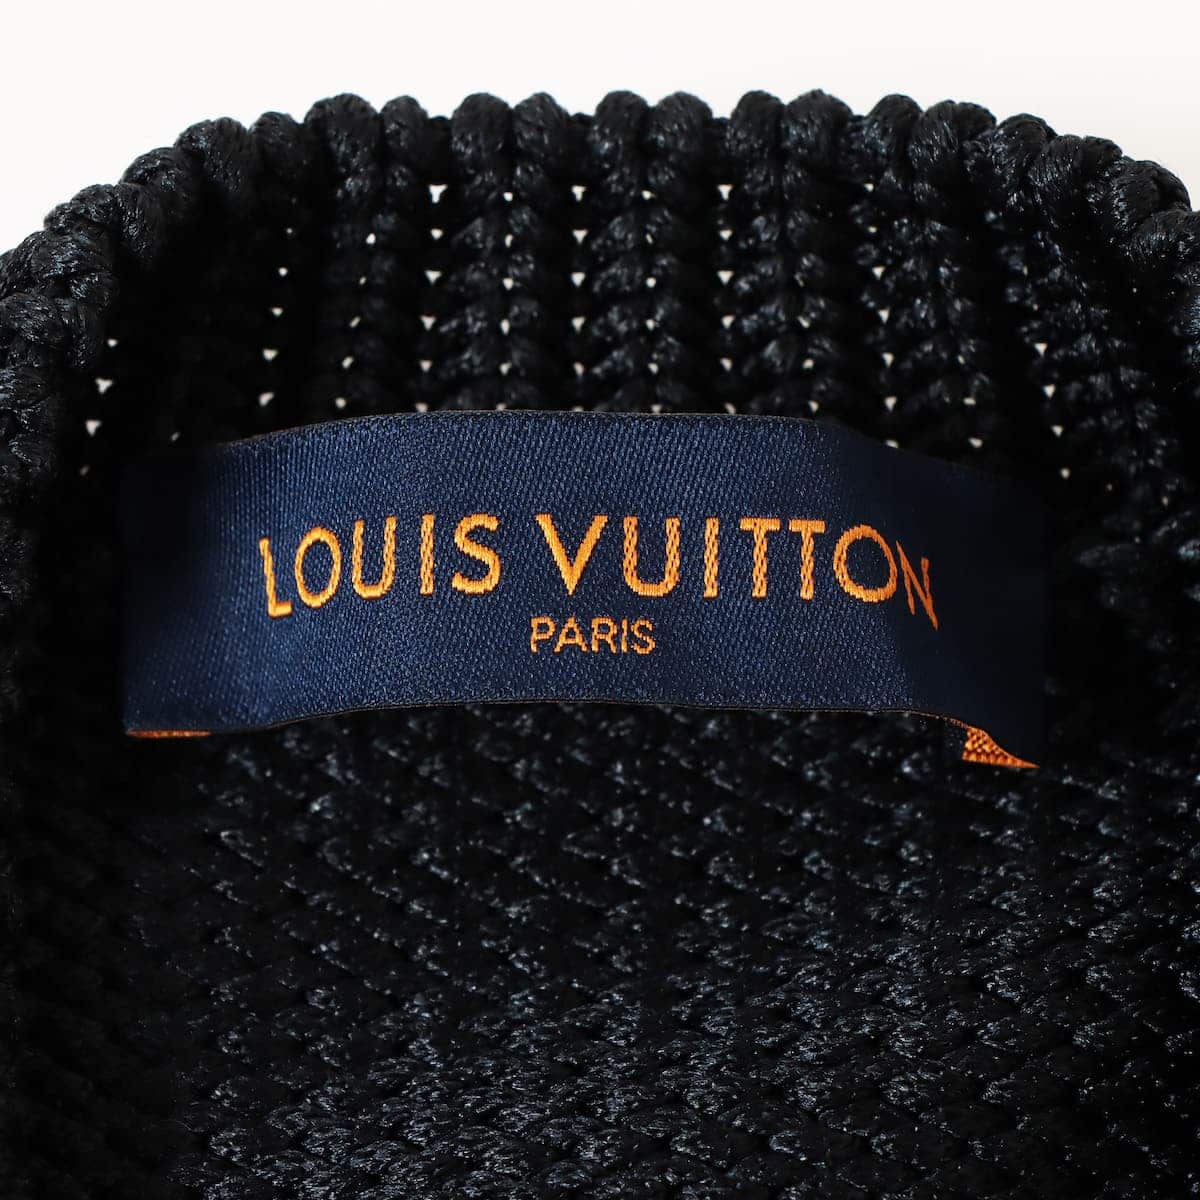 ルイヴィトン シルク×ポリエステル ニット S メンズ ブラック×ブラウン  Back Logo Knit Sweater